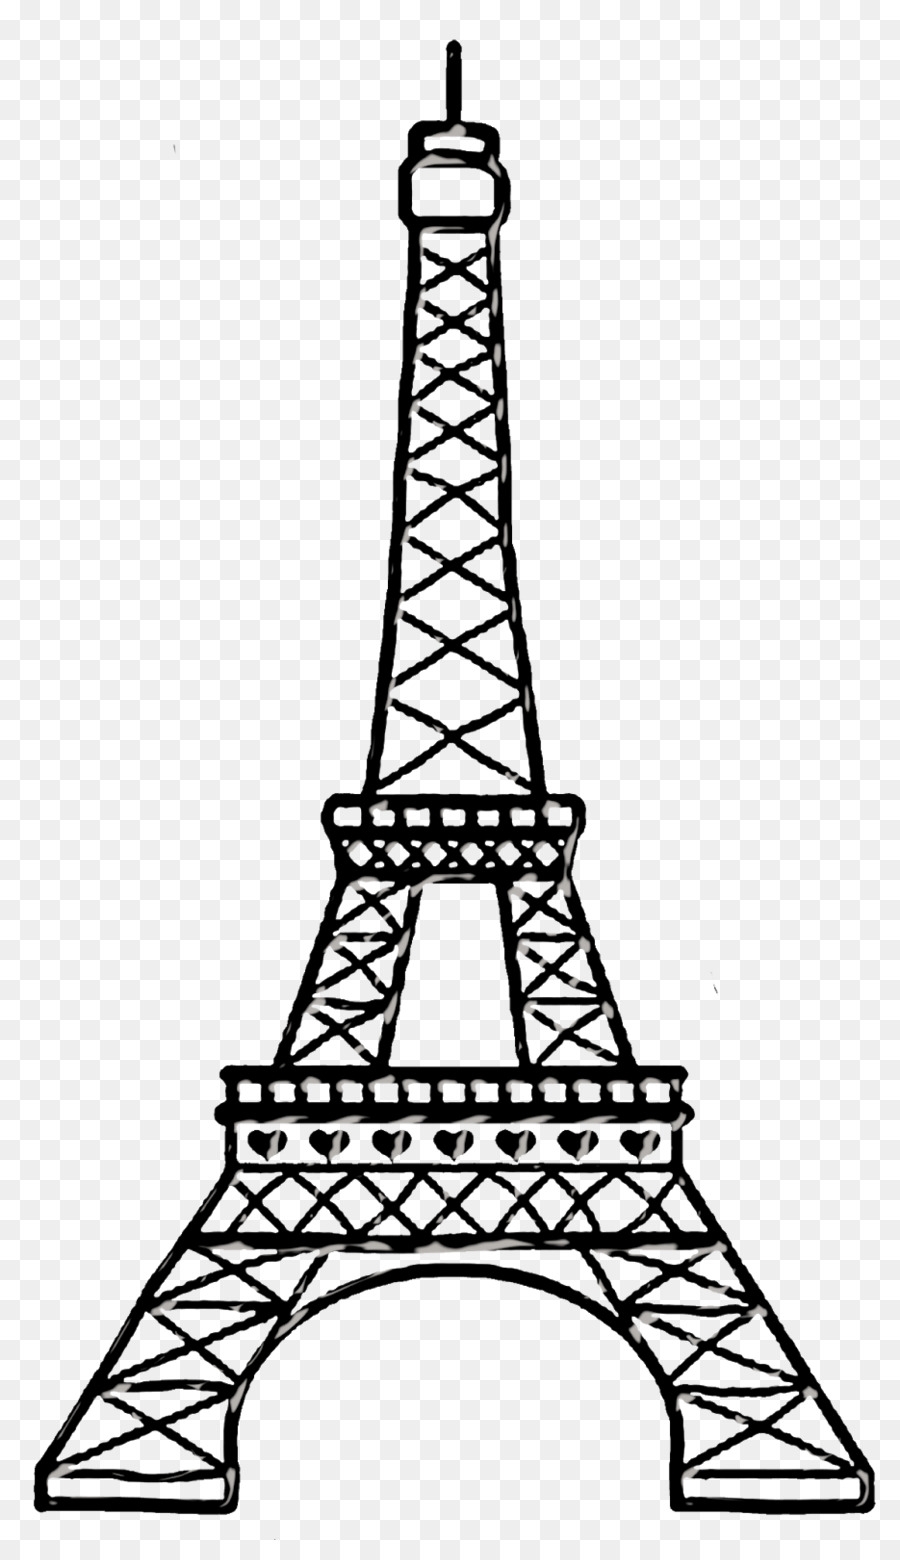 Раскраски Эйфелева башня: 58 раскрасок - скачать или распечатать бесплатно